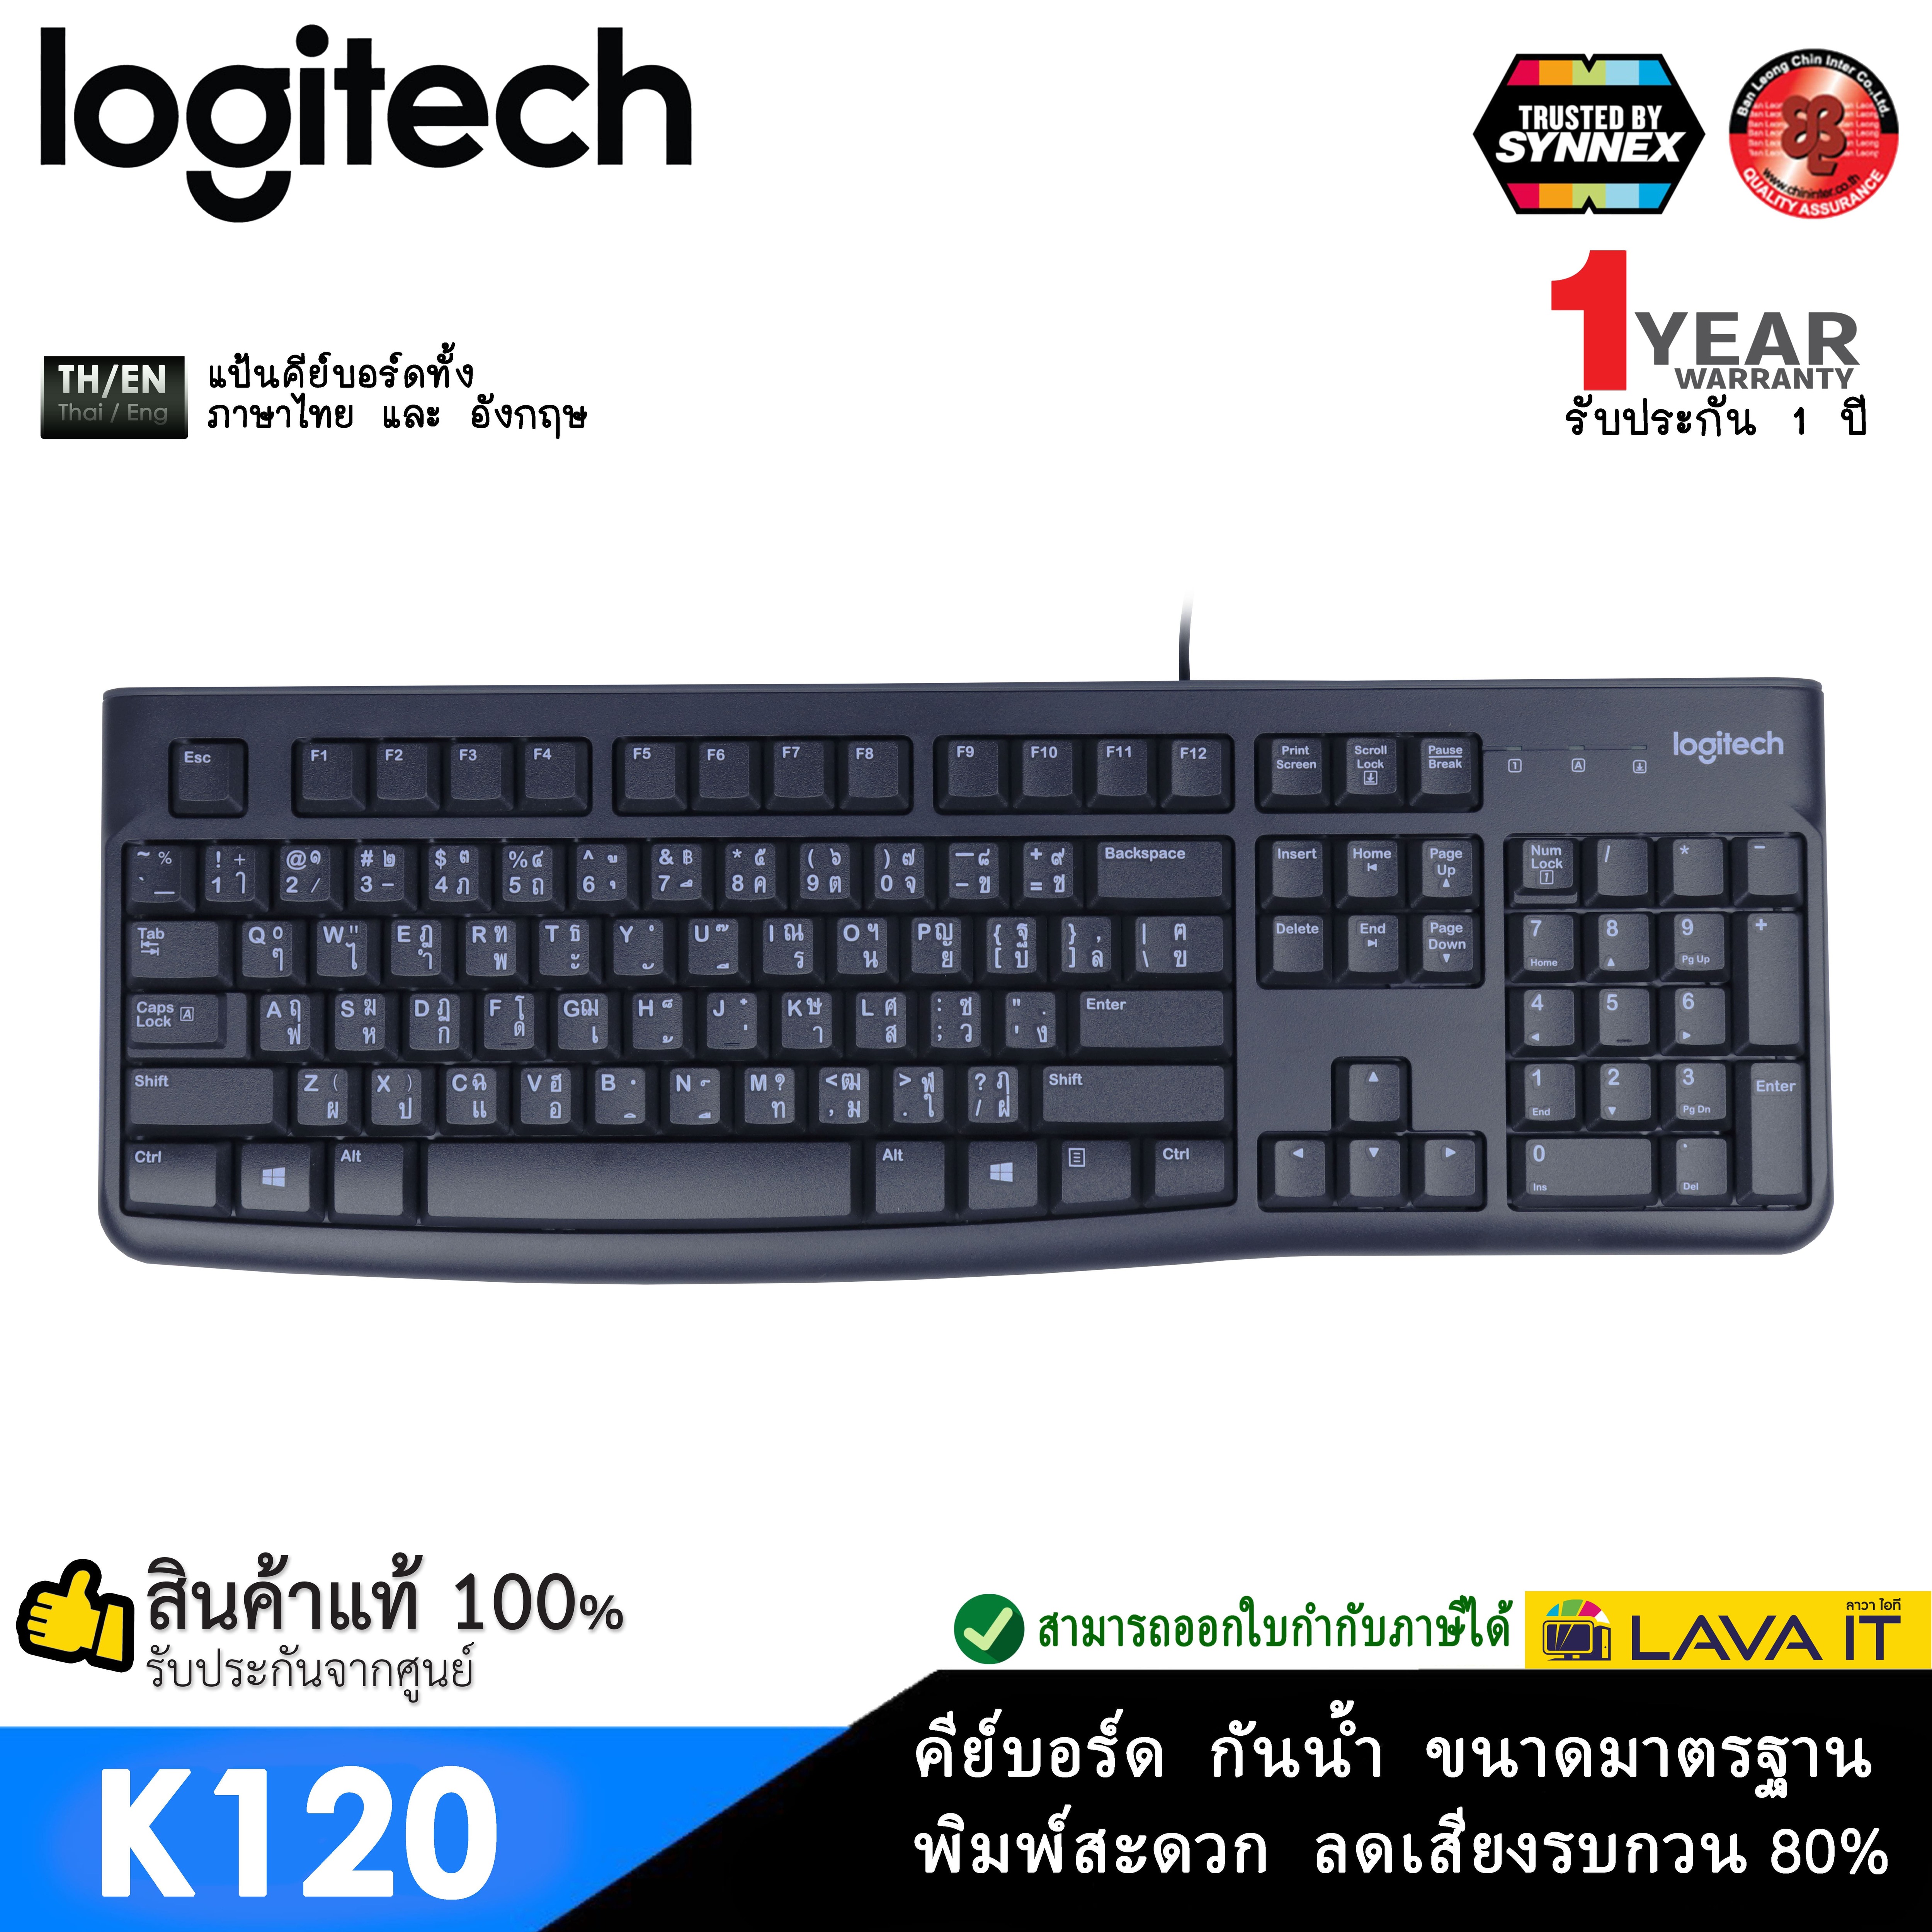 Logitech K120 USB Computer Keyboard คีย์บอร์ดทรงมาตรฐานแป้นภาษาไทย กันน้ำ ปุ่มทนทาน พิมพ์ง่าย ✔รับประกันสินค้า 1 ปี